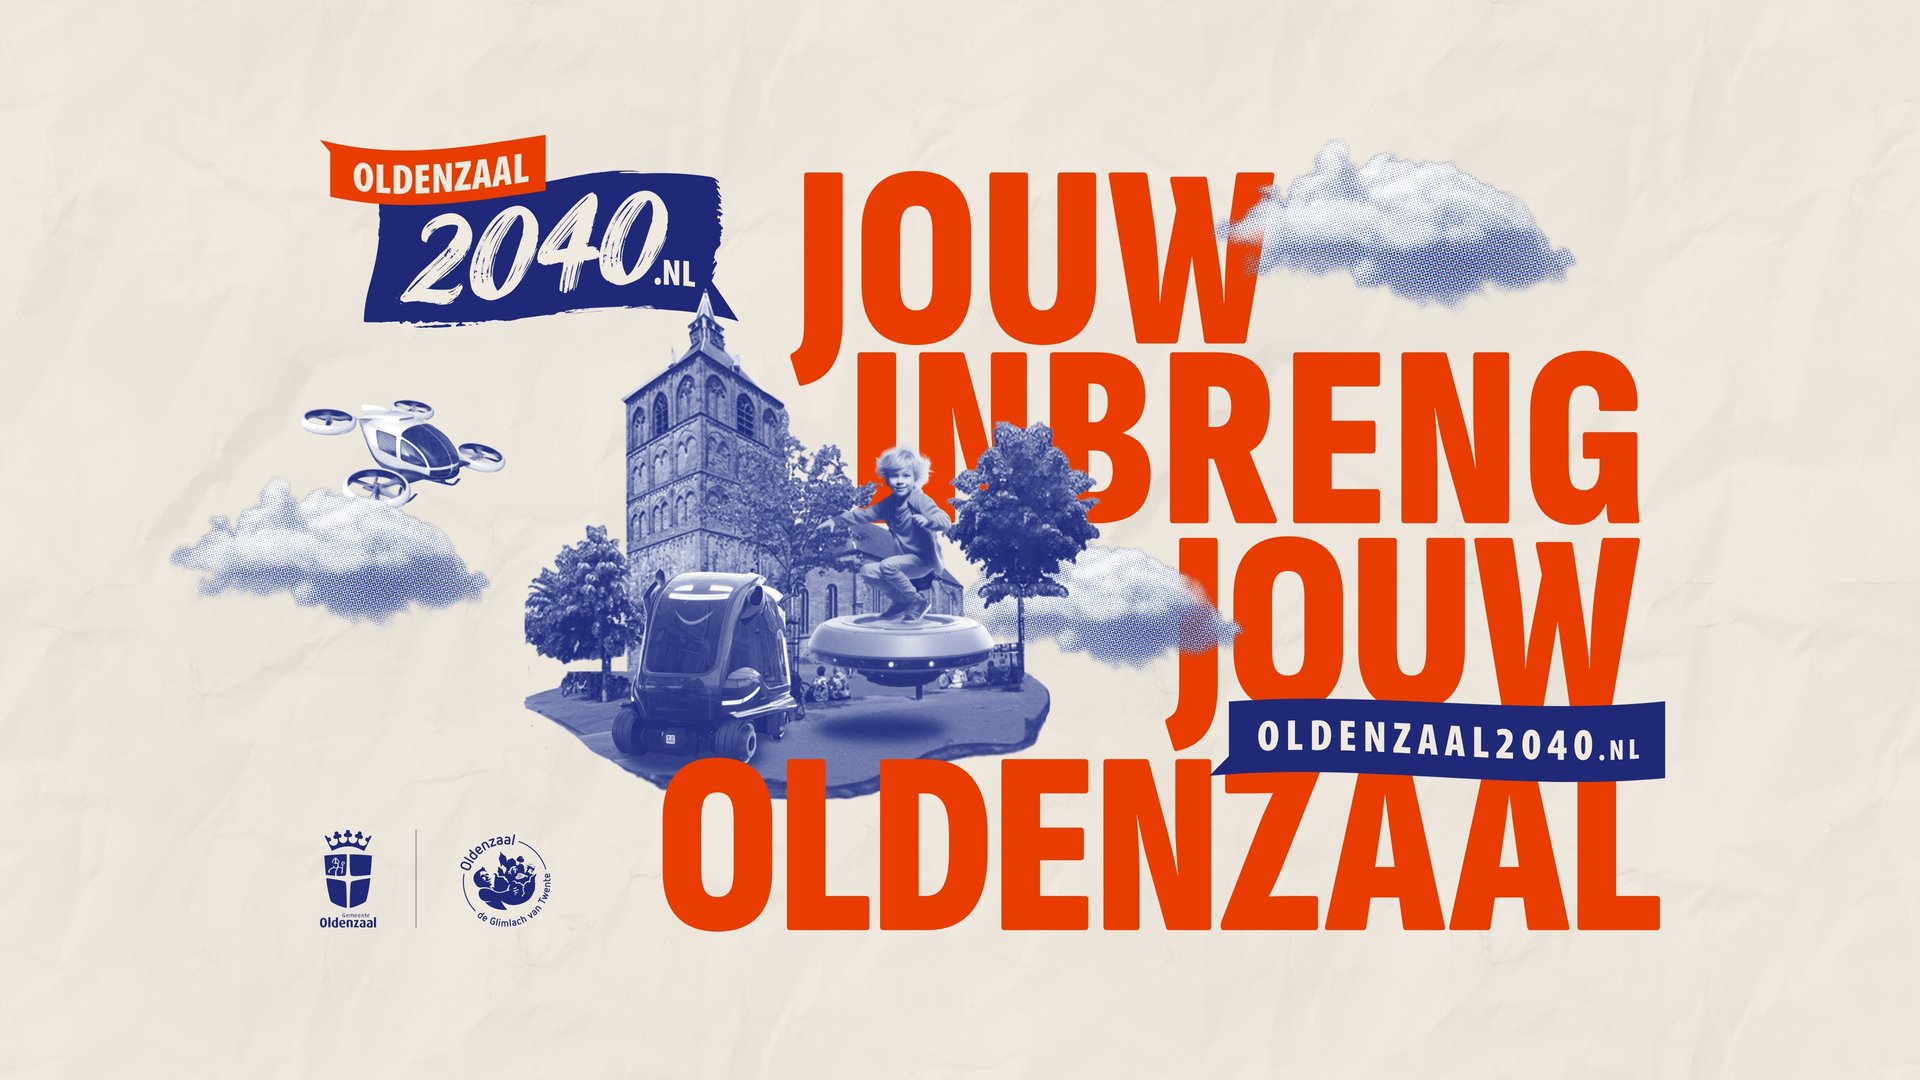 Oldenzaal 2040